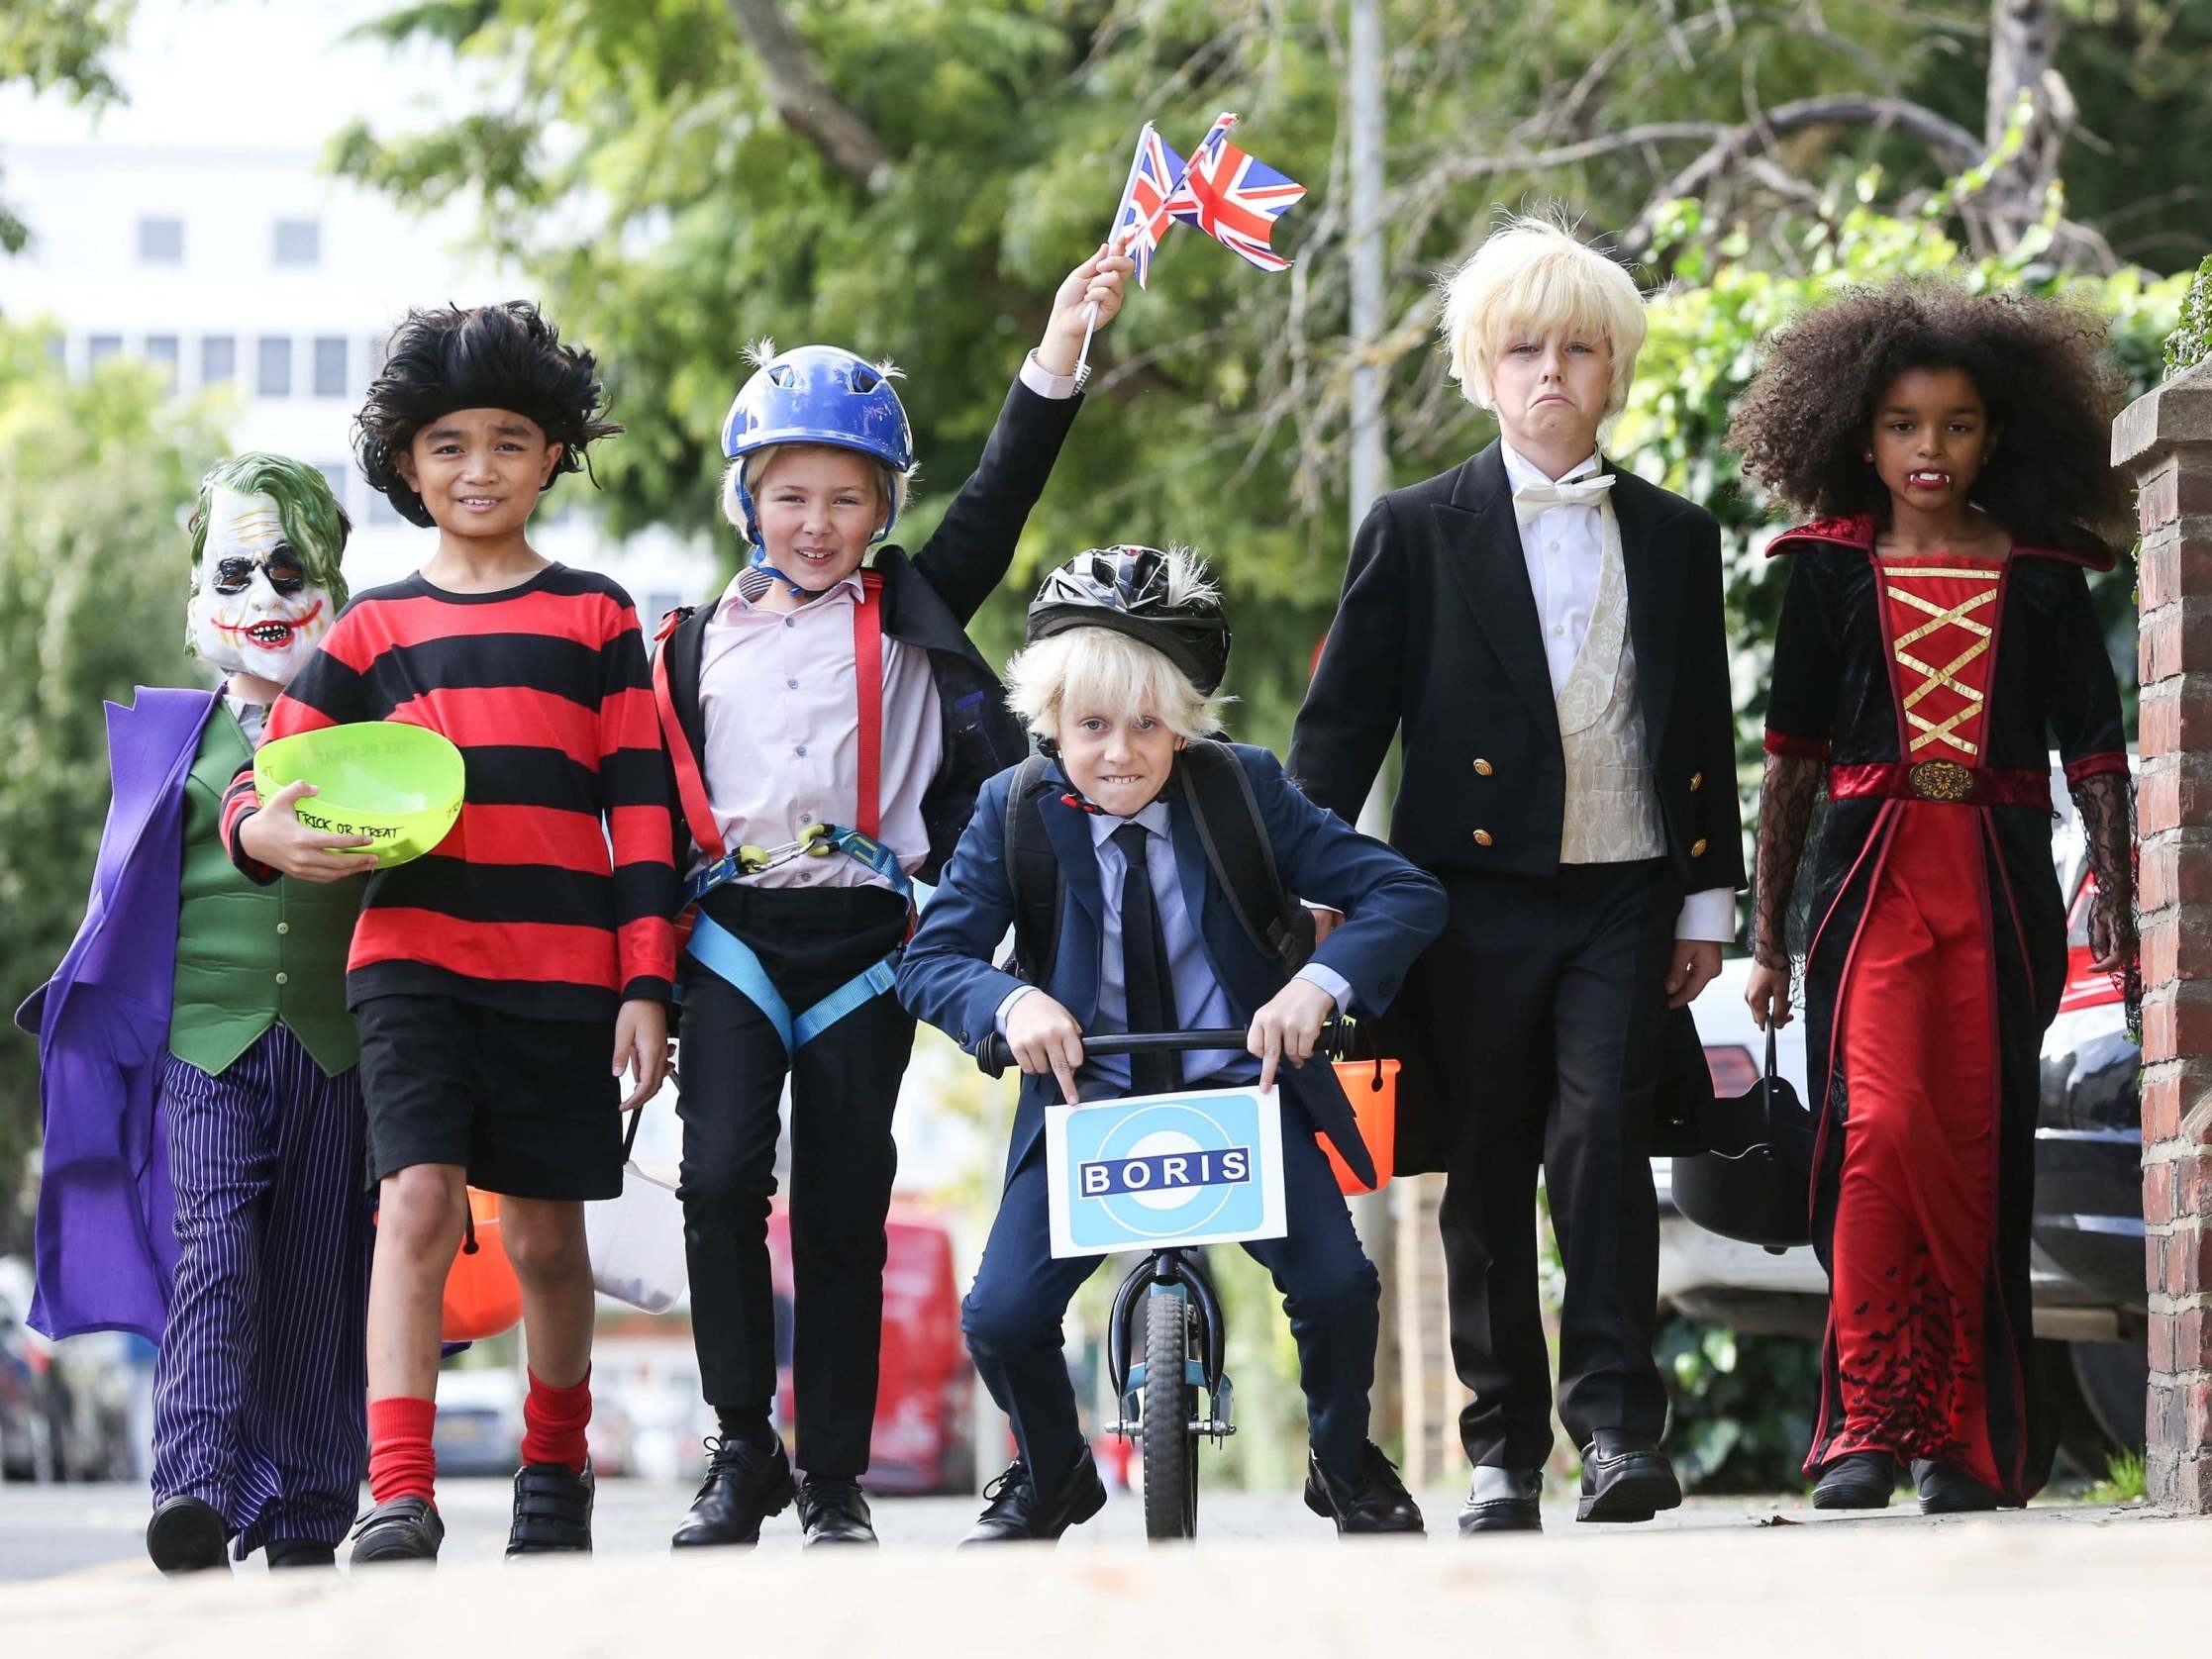 children's vampire costumes uk